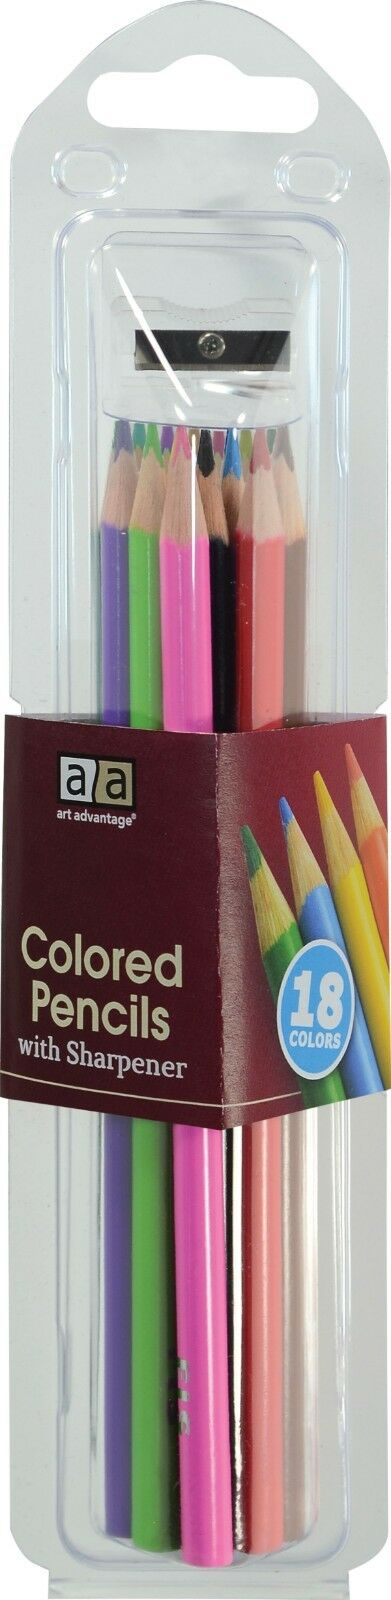 AA Colored Pencils w/Sharpener 18 Color Set, 3 sets! 54 Pencils!